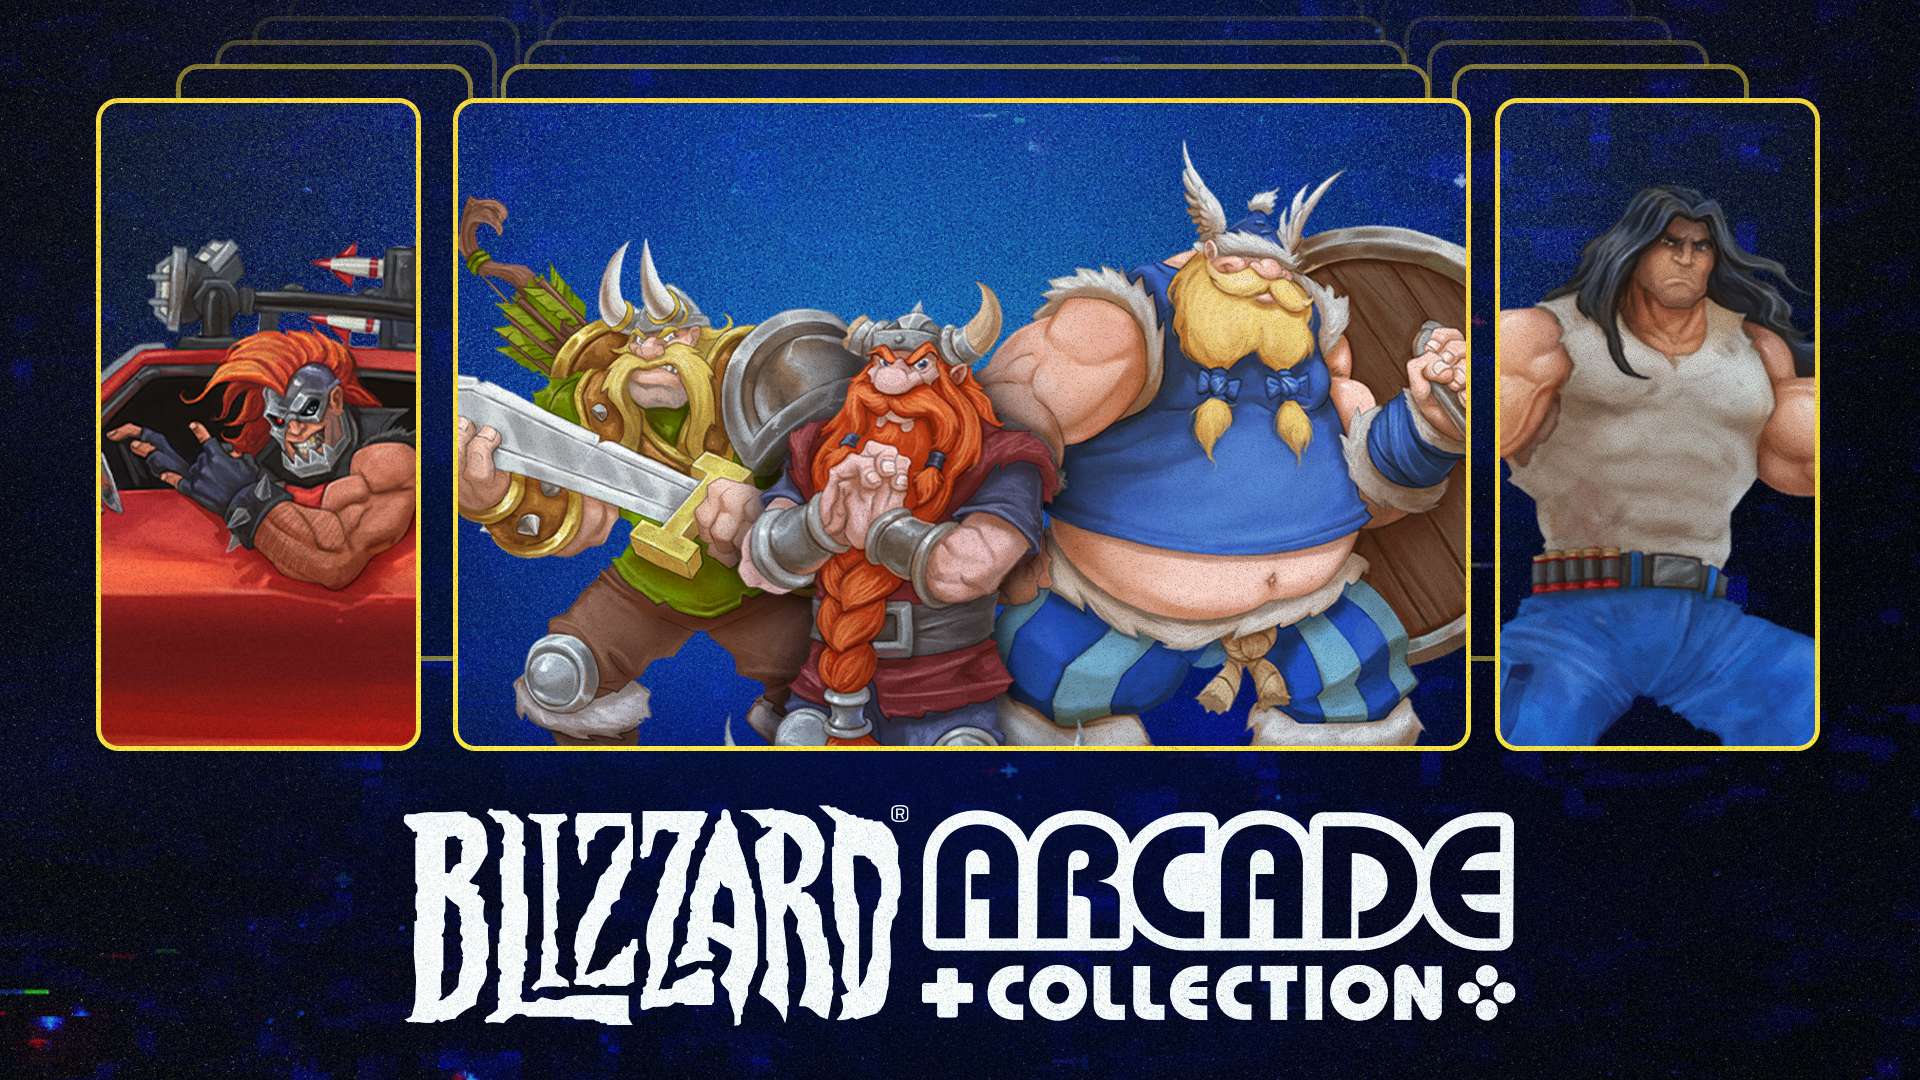 La Blizzard® Arcade Collection fa il salto di qualità: due nuovi giochi e nuove funzioni